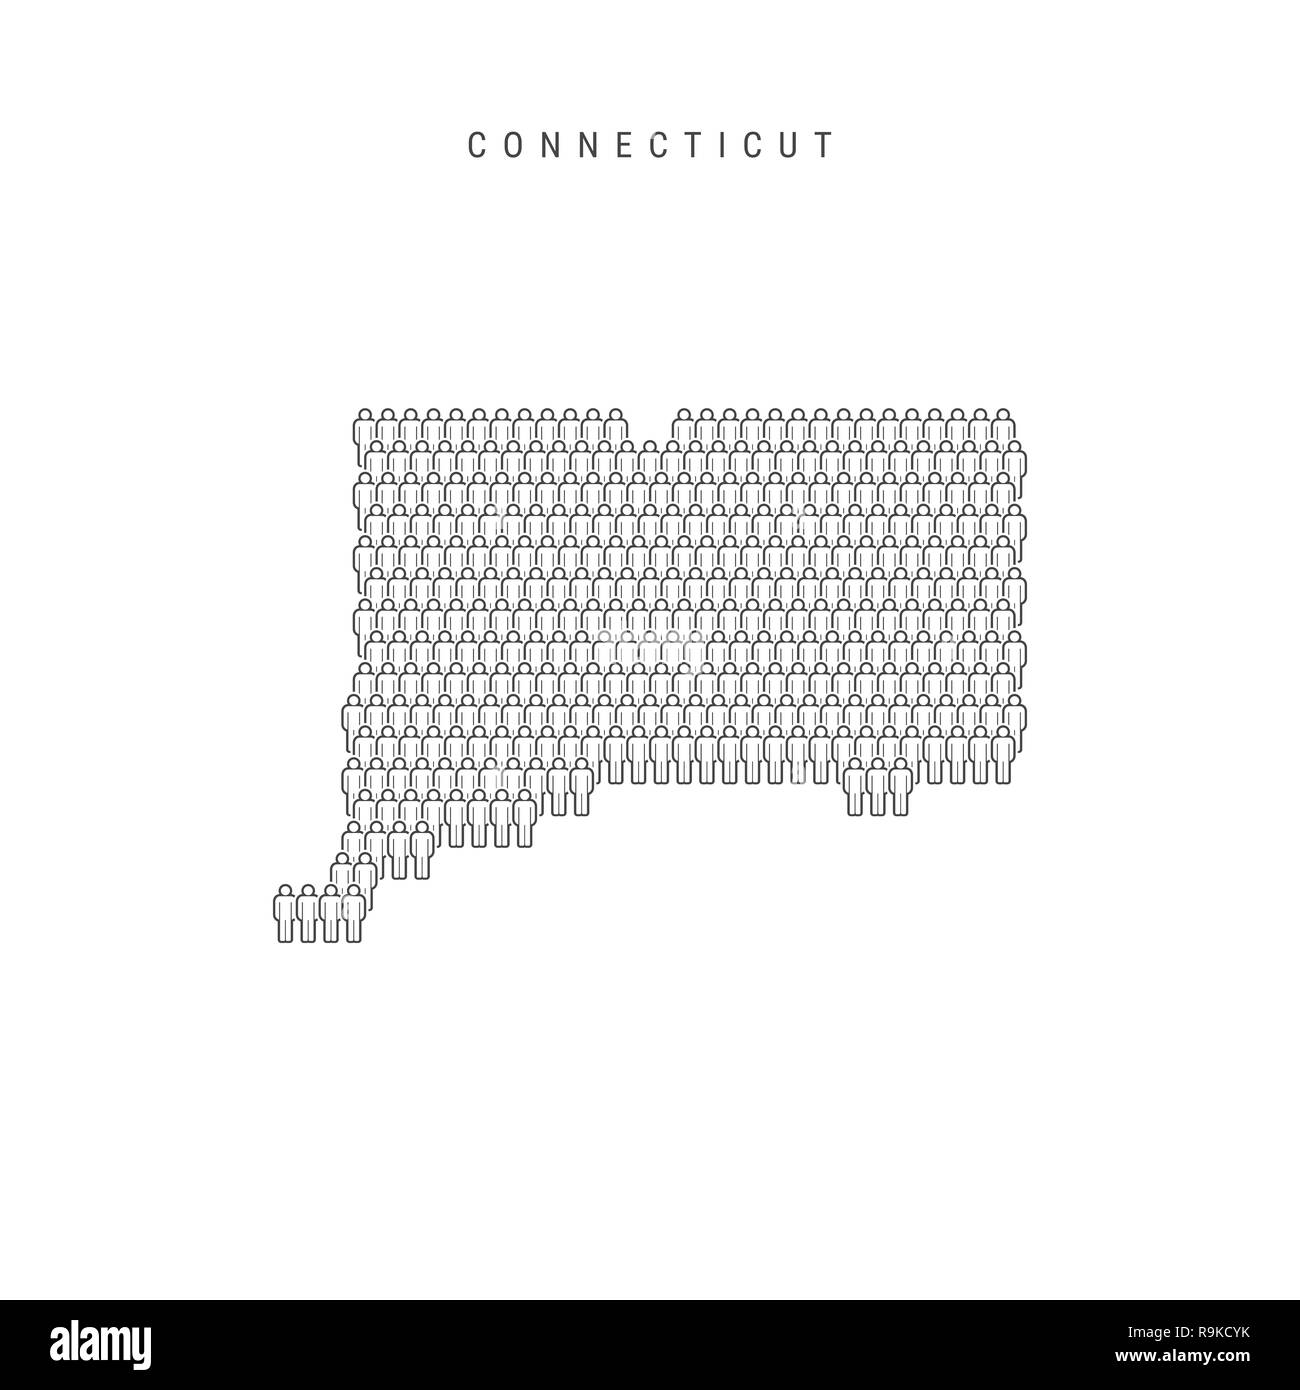 Leute Karte von Connecticut, USA. Stilisierte Silhouette, Leute in der Form einer Karte von Connecticut. Connecticut Bevölkerung. Abbildung: Isol Stockfoto